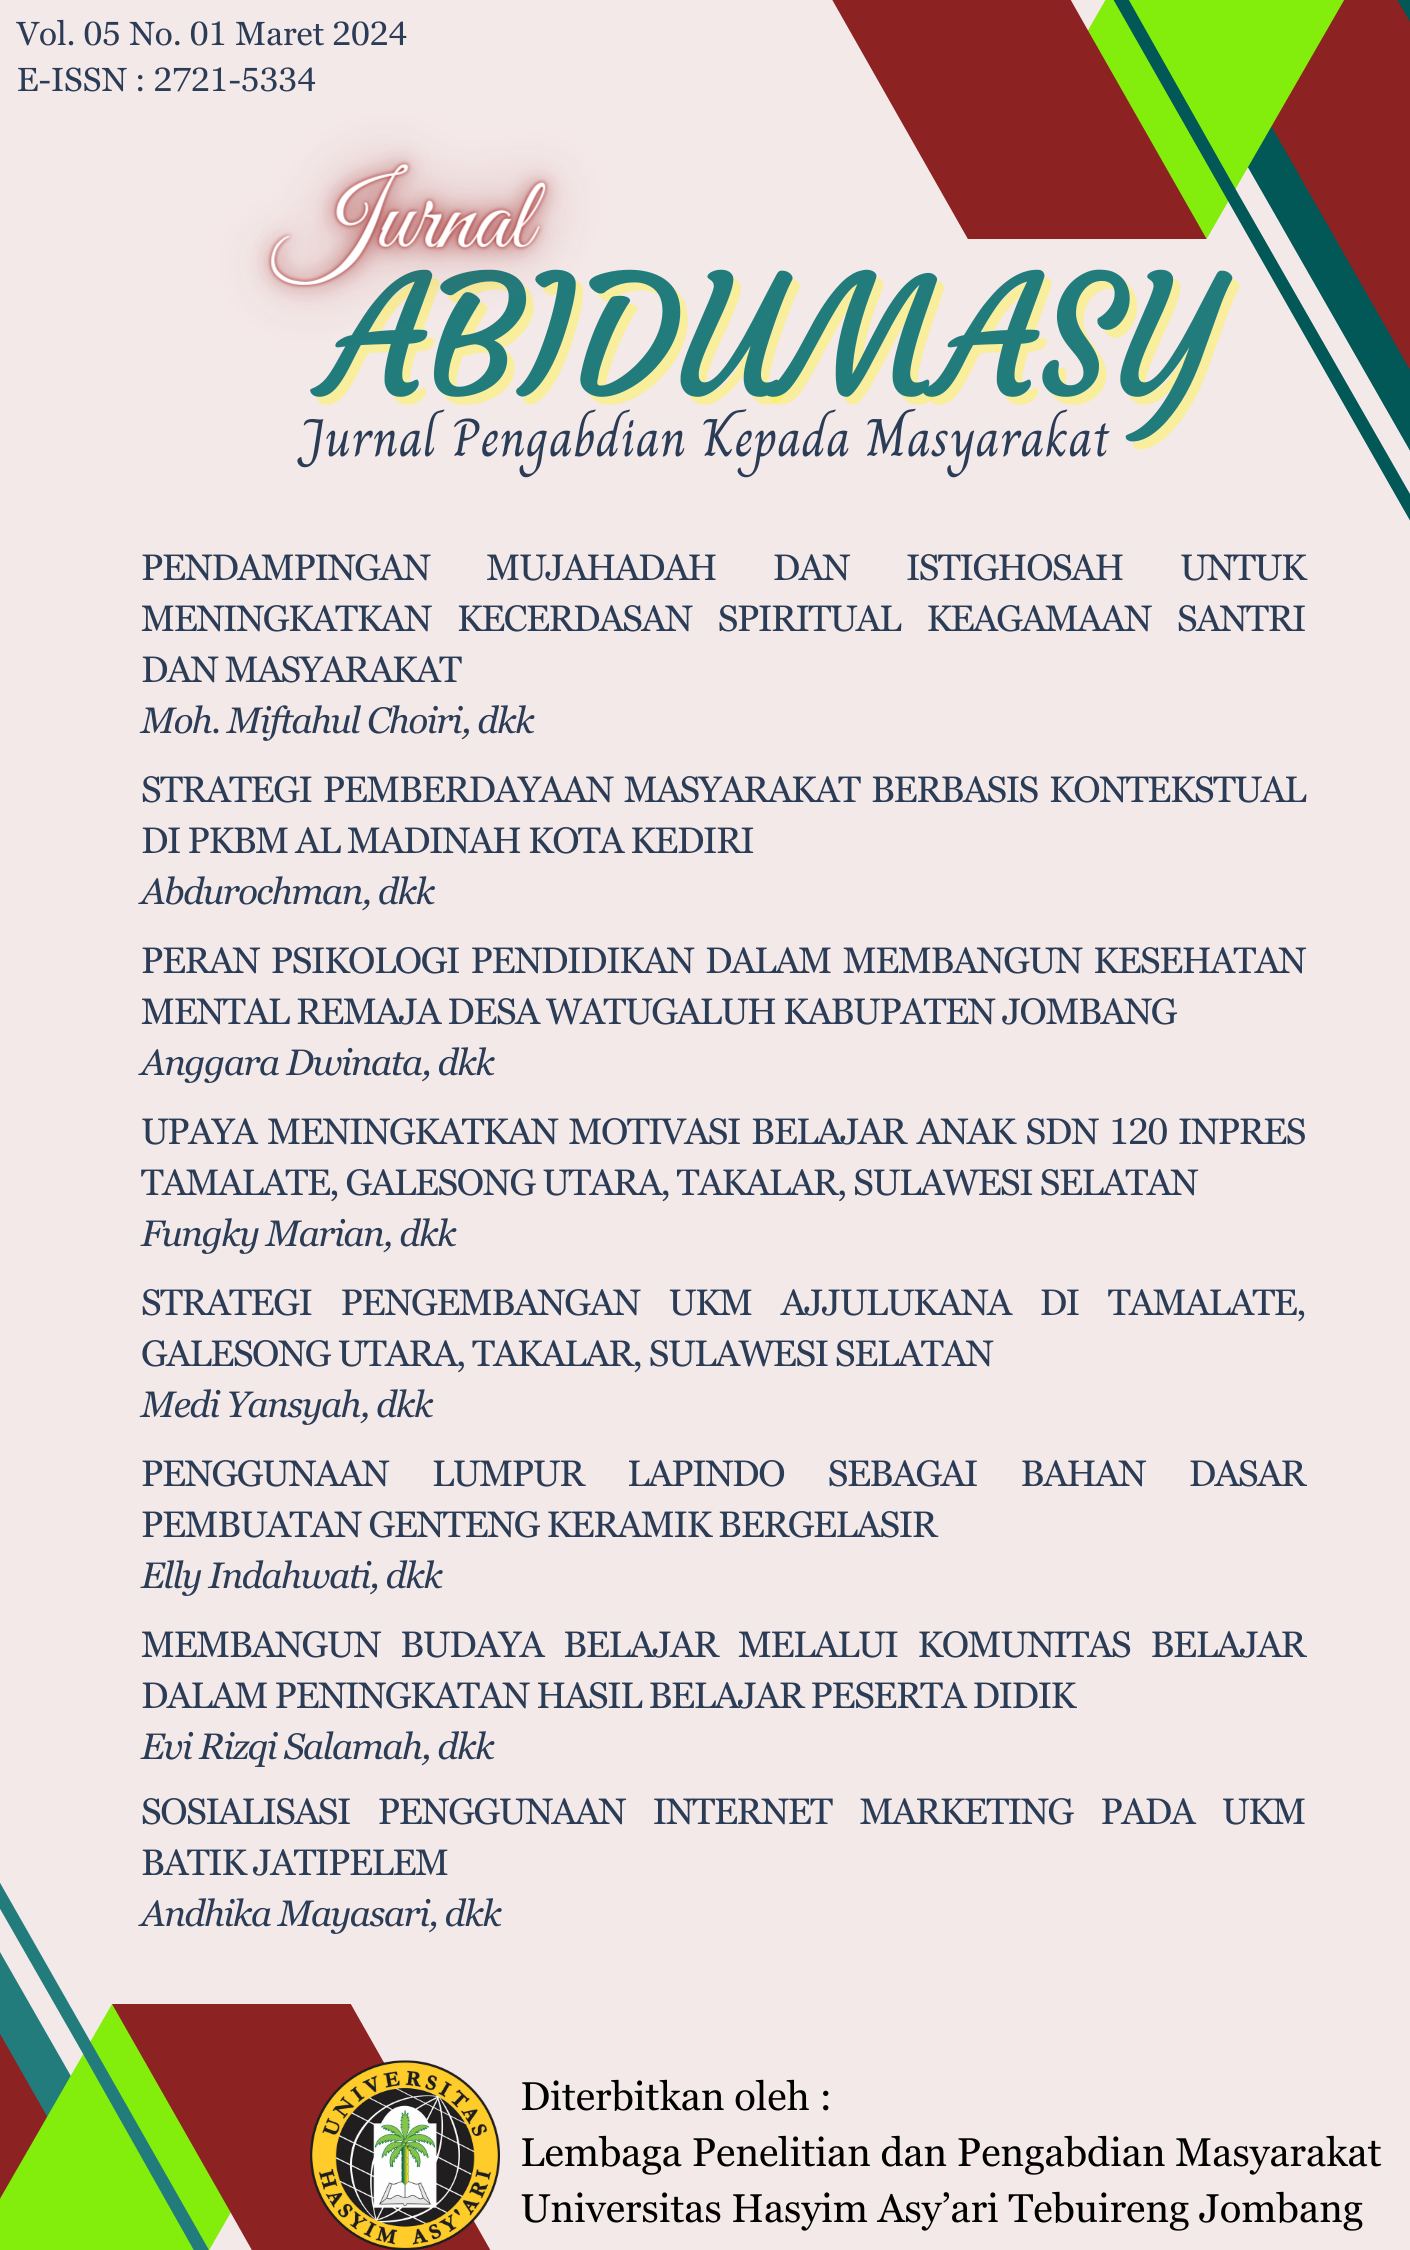 					Lihat Vol 5 No 01 (2024): ABIDUMASY : JURNAL PENGABDIAN KEPADA MASYARAKAT
				